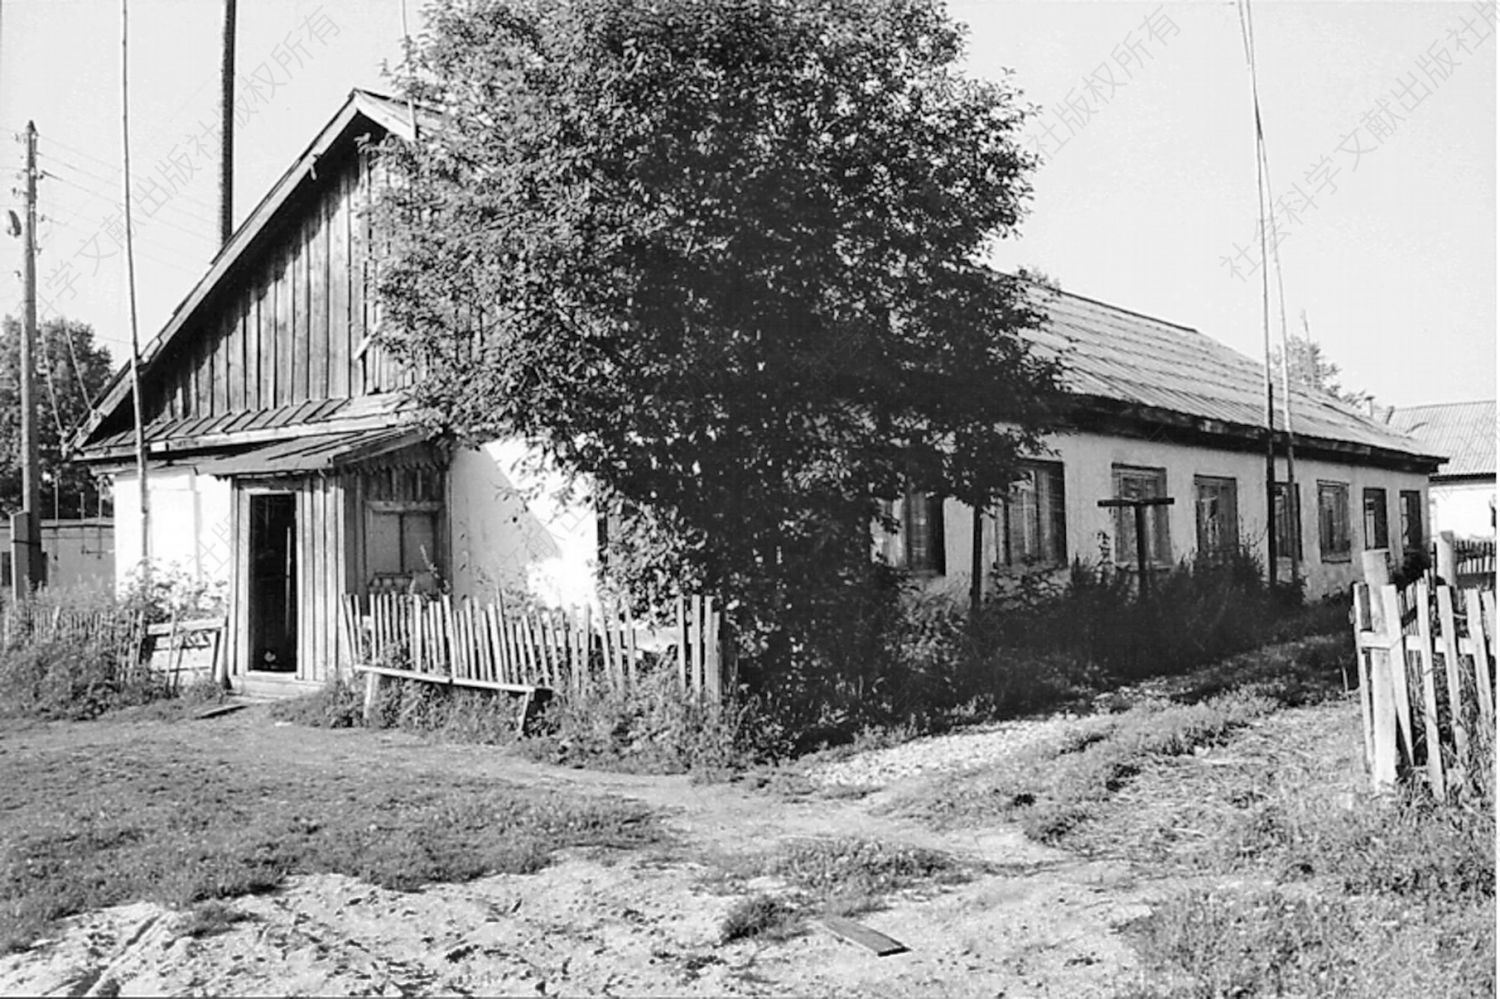 图4-4 宿舍 斯维尔德洛夫斯克州新阿列克谢耶夫斯卡耶村 摄于2003年